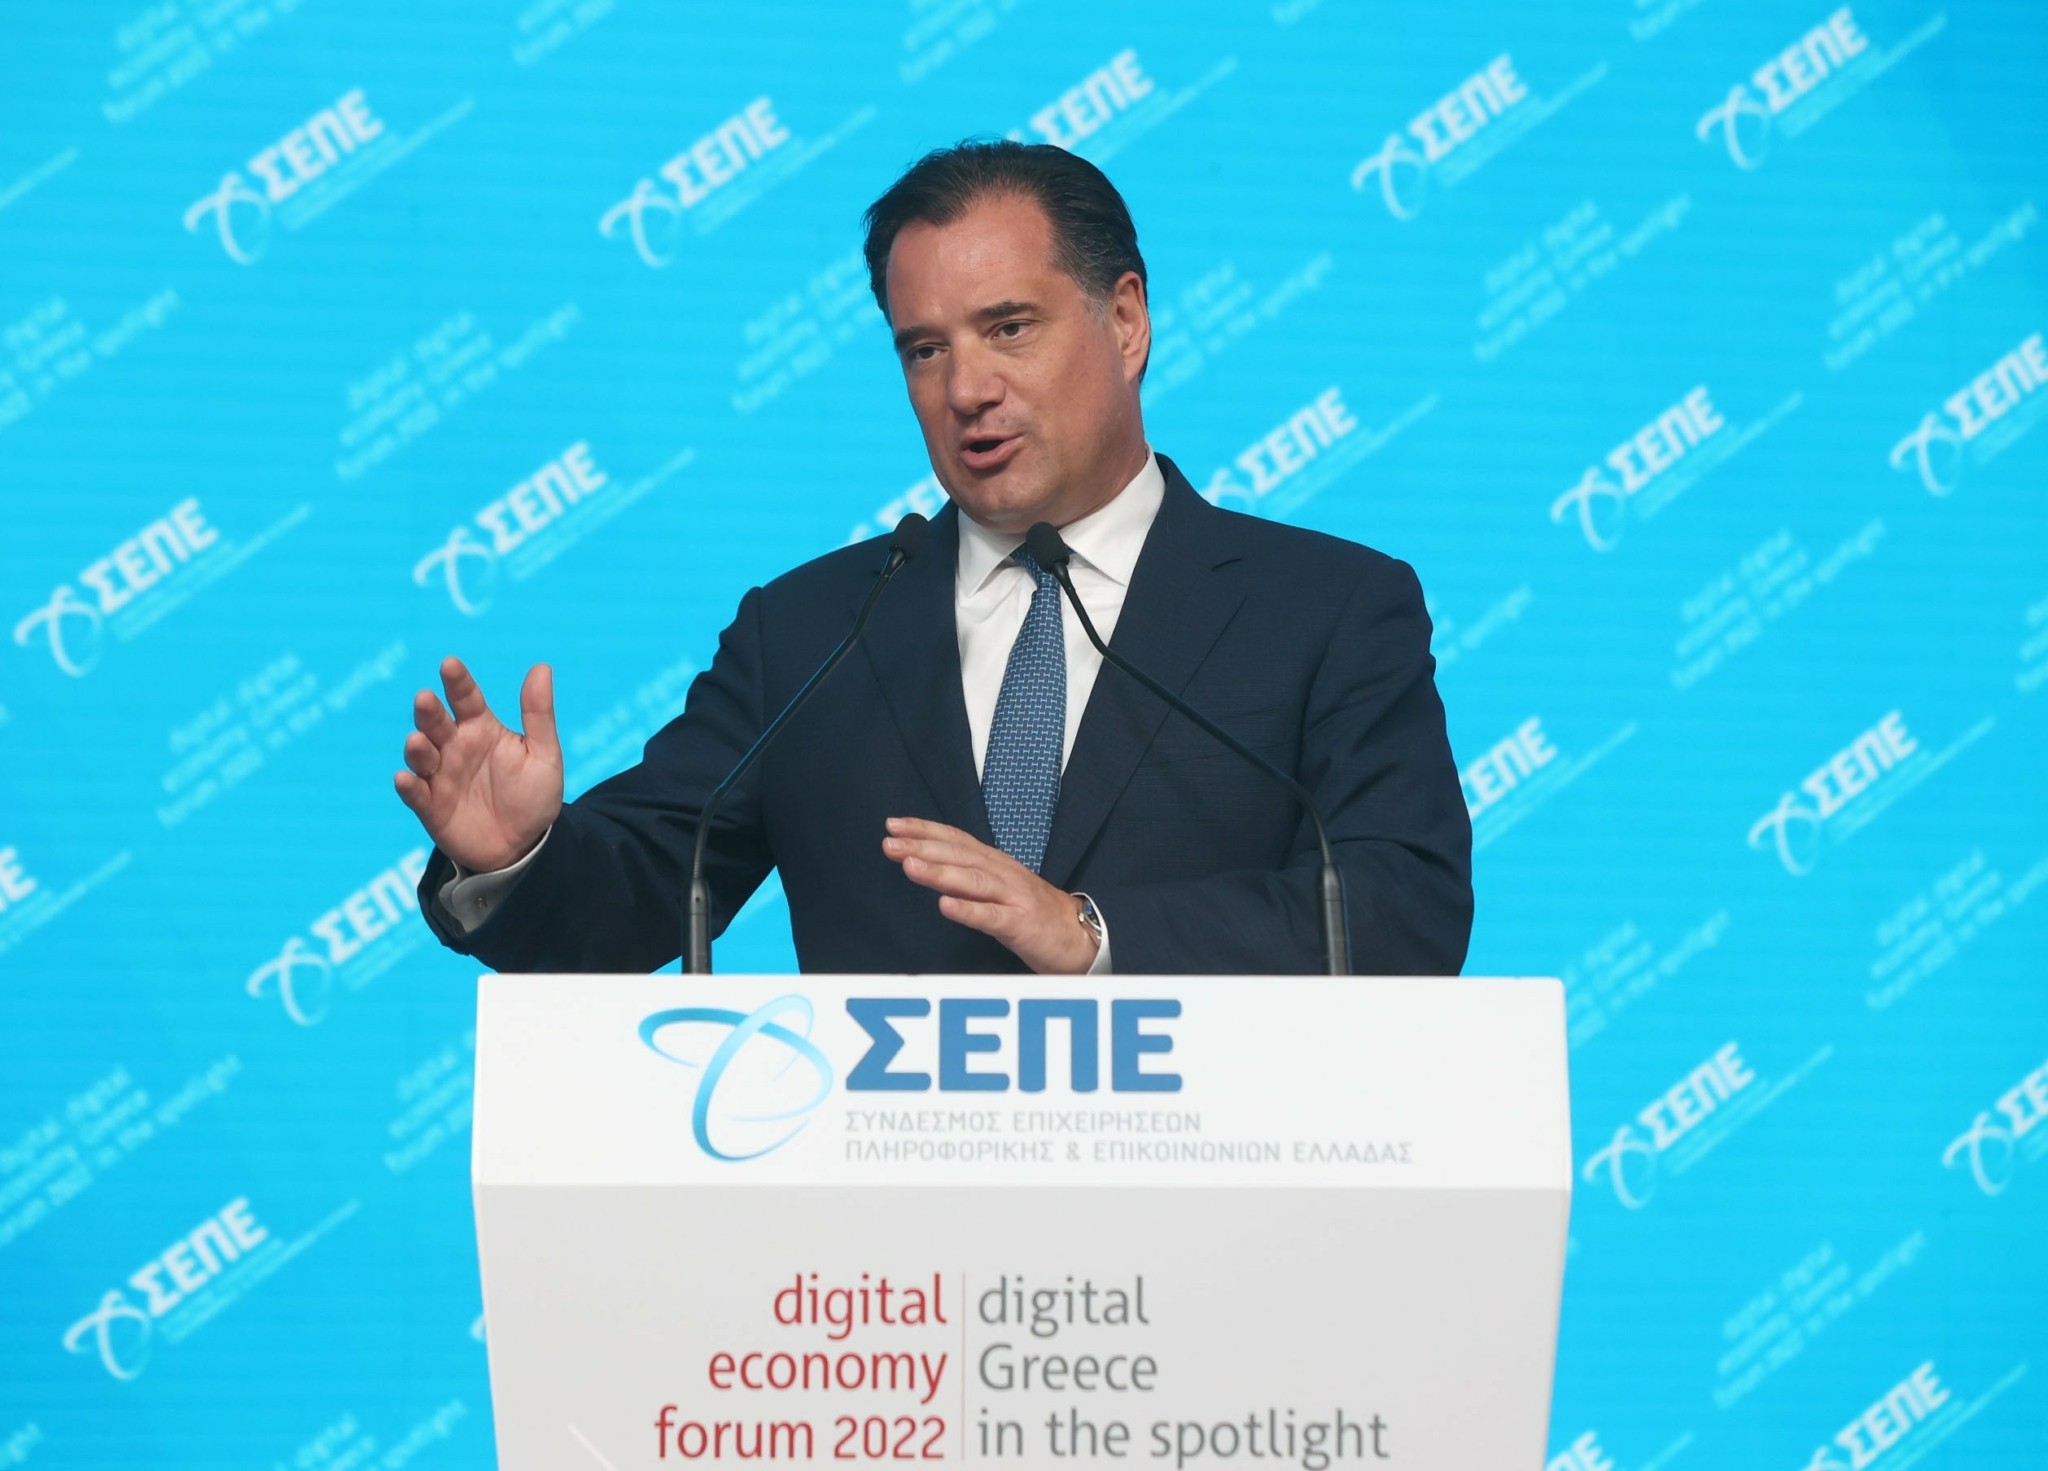 Γεωργιάδης: Η Ελλάδα έχει αποδείξει ότι έχει δυναμική να γίνει πόλος έλξης για το data economy